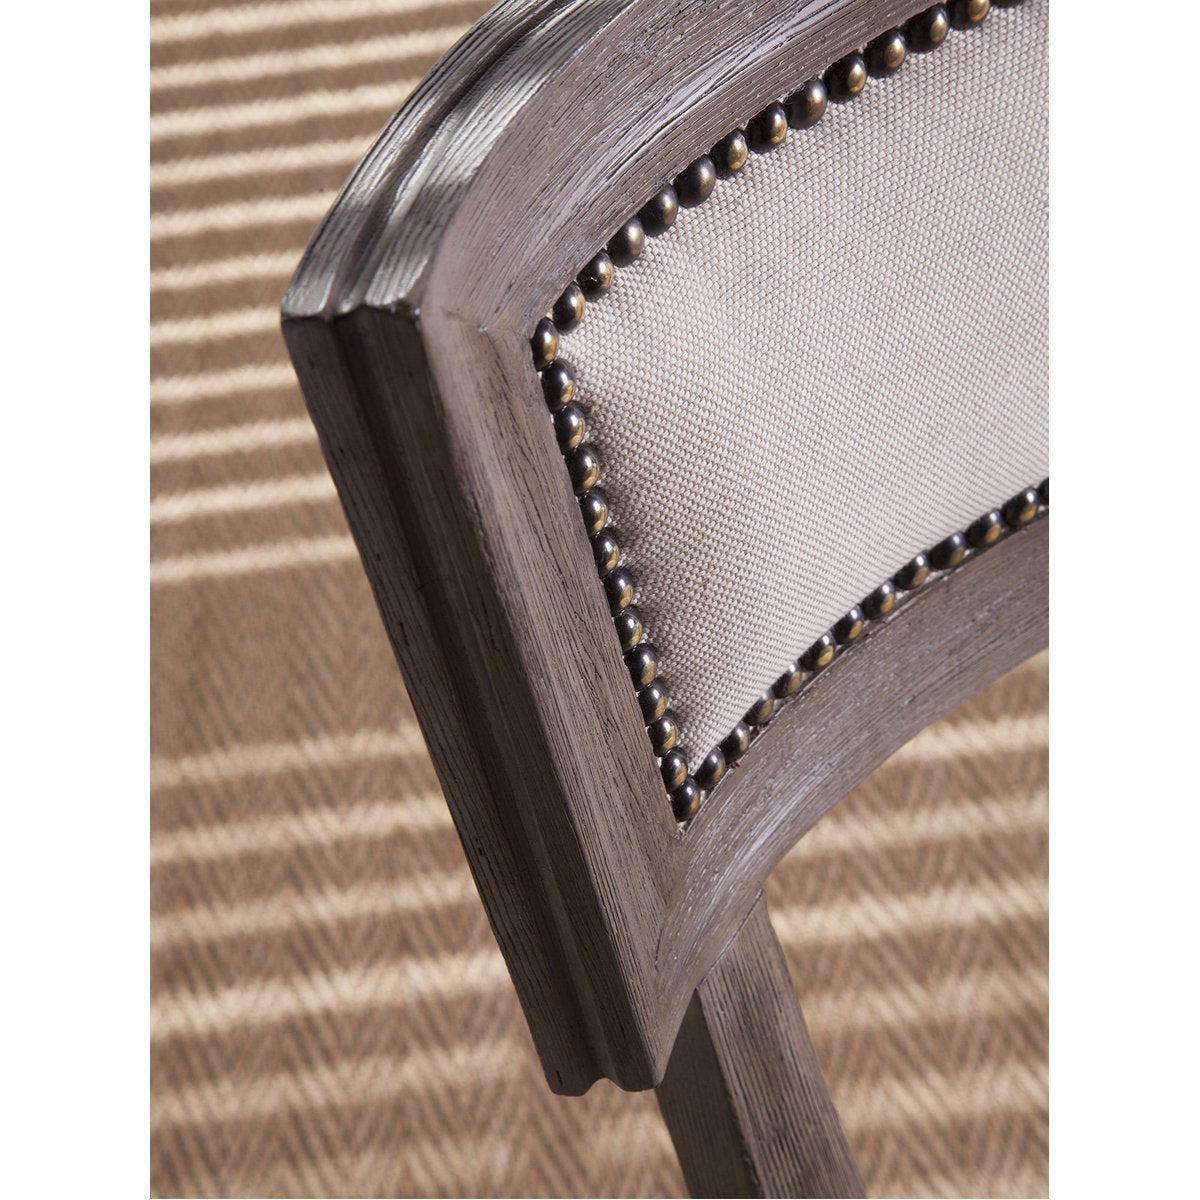 Artistica Home Apertif Side Chair 01-2000-880